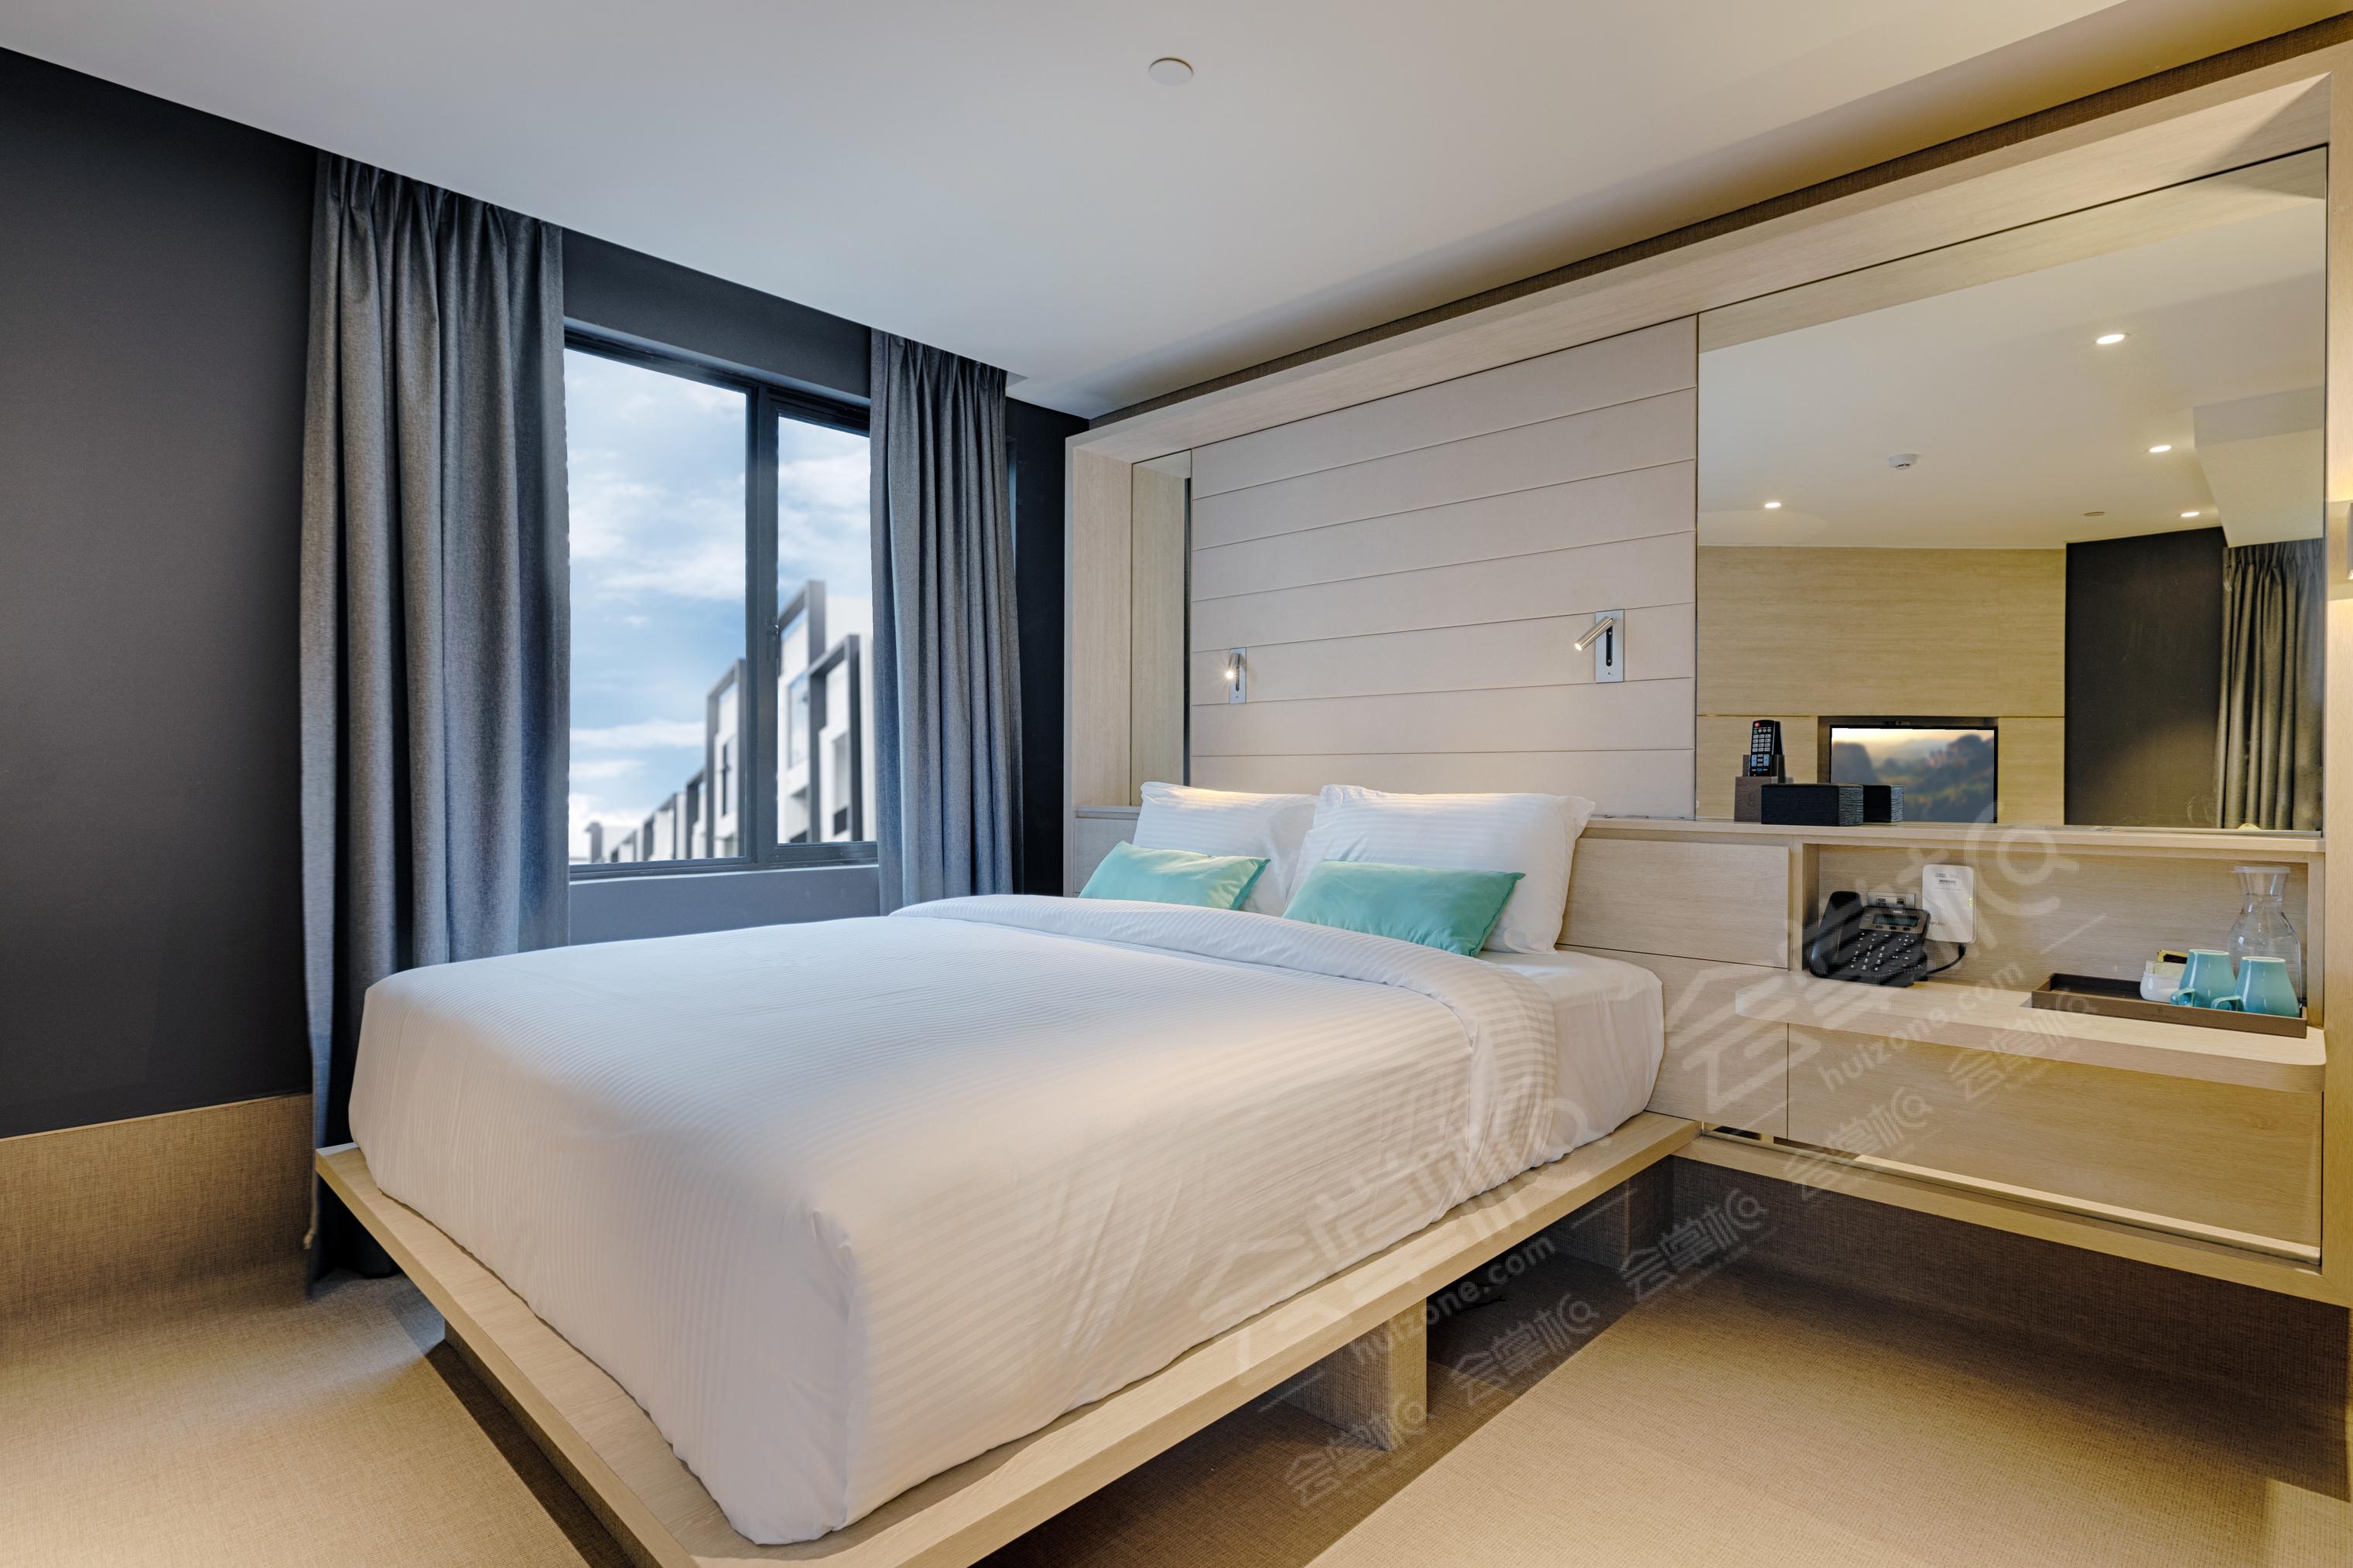 槟城四星级酒店最大容纳200人的会议场地|上屋青年旅馆(The Upper House Hotel)的价格与联系方式